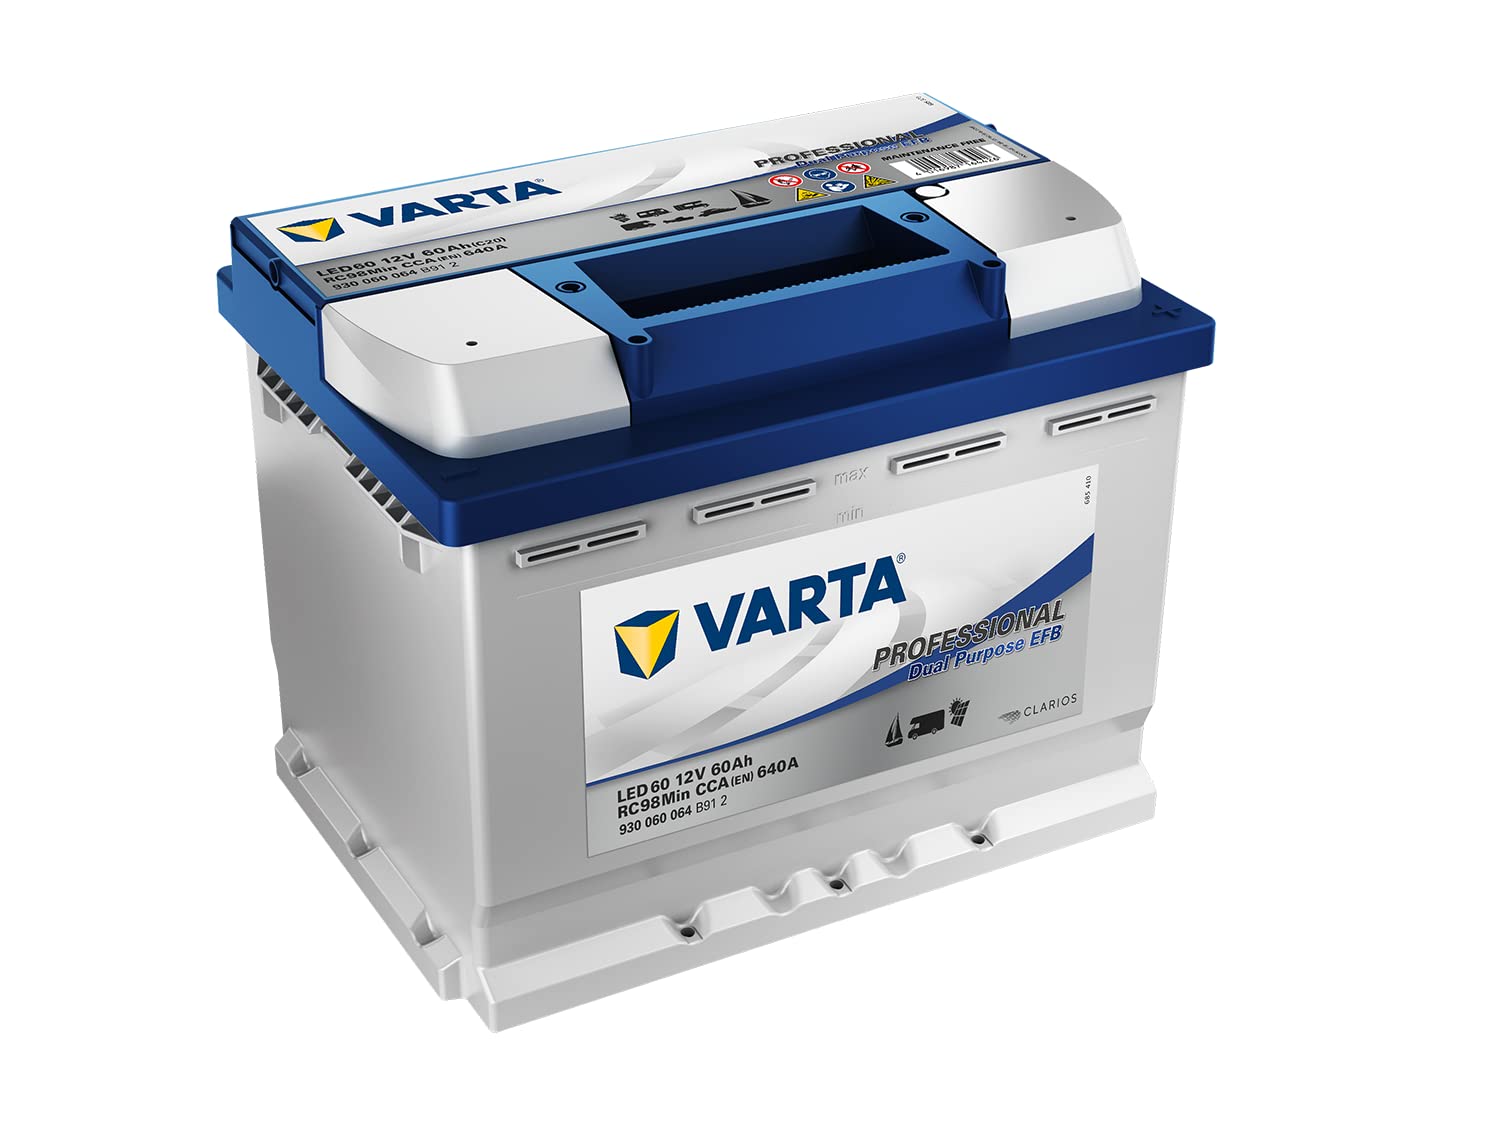 Varta Professional Dual Purpose EFB LED 60 12V 60AH 680A, grau von Varta